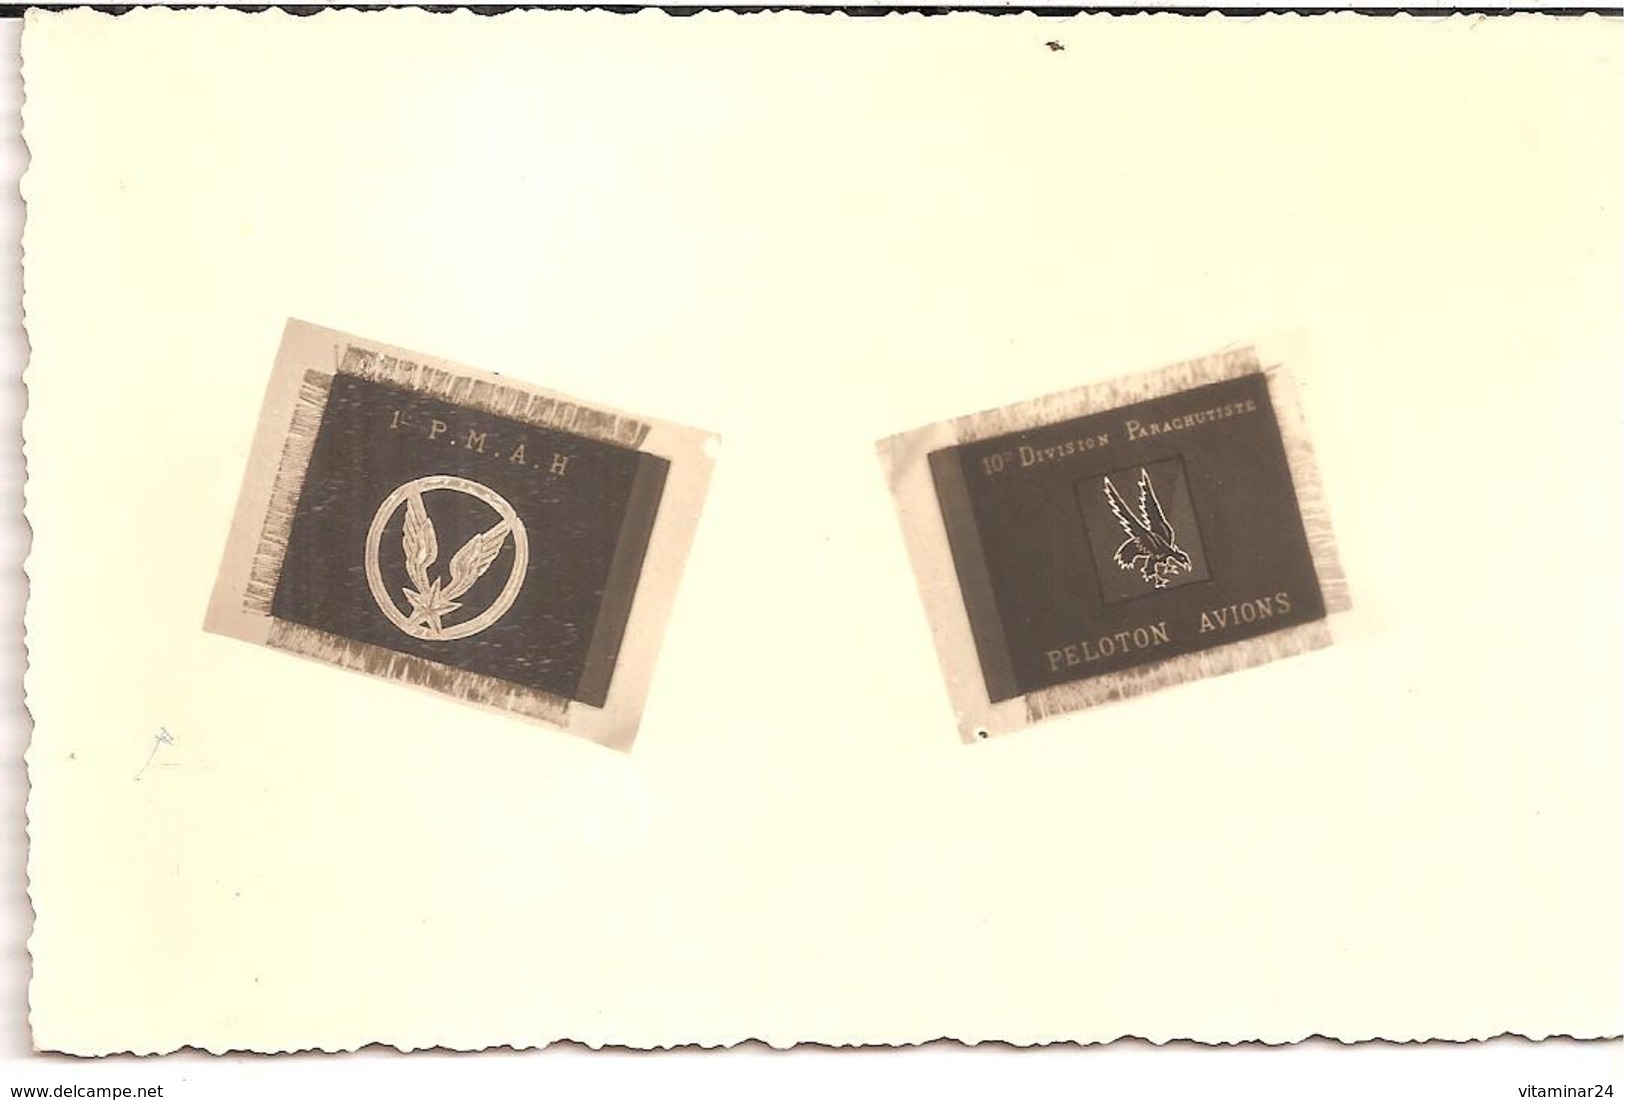 10e Division Parachutiste - 1er P.M.A.H.  -  Carte De Voeux. Avion Monomoteur En Vol Immatriculé "ACG" - Régiments